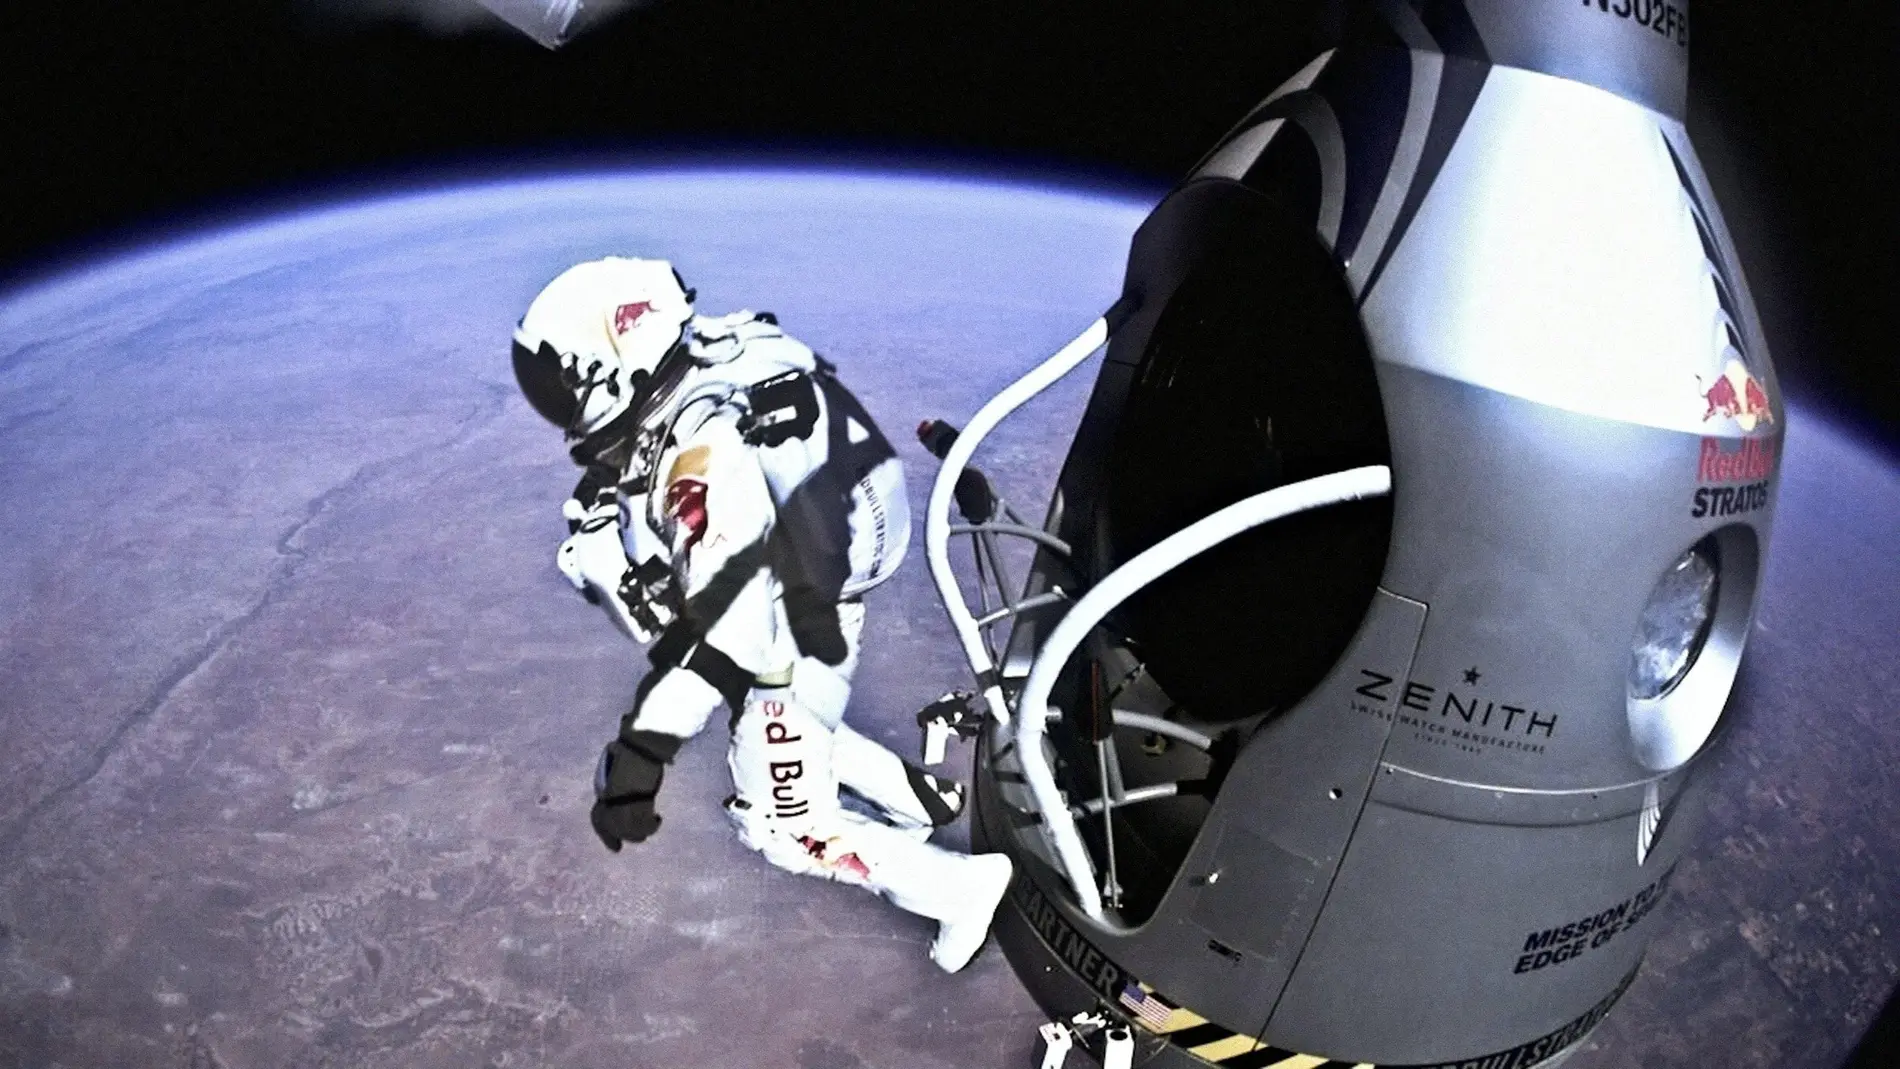 Felix Baumgartner se prepara para romper la barrera del sonido durante la misión Red Bull Stratos a las puertas del espacio.